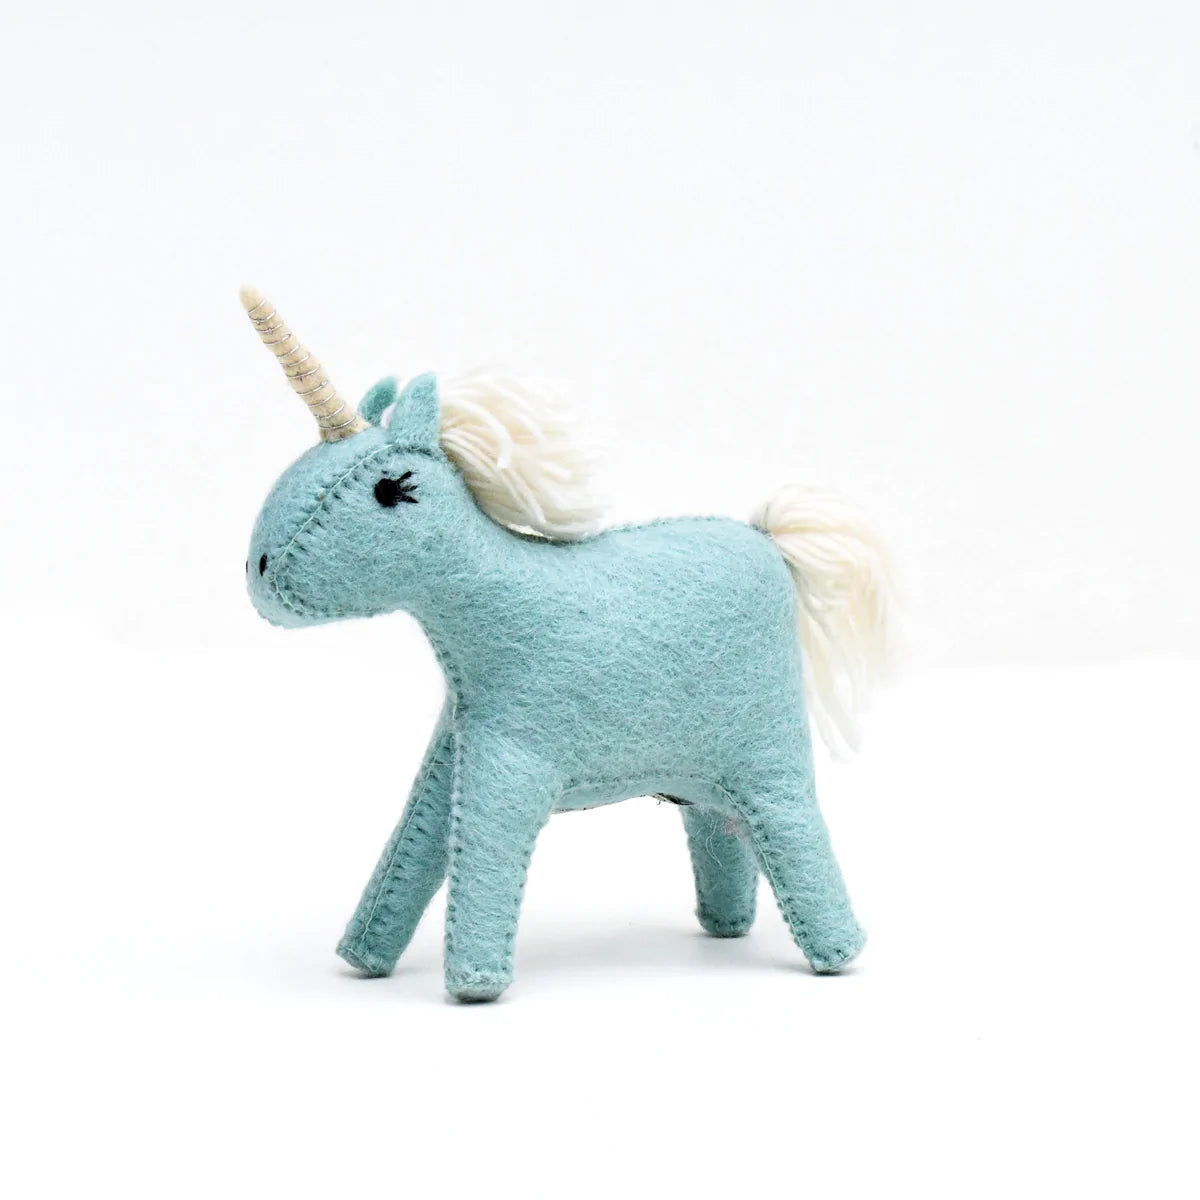 Felt Unicorn Toy - Blue